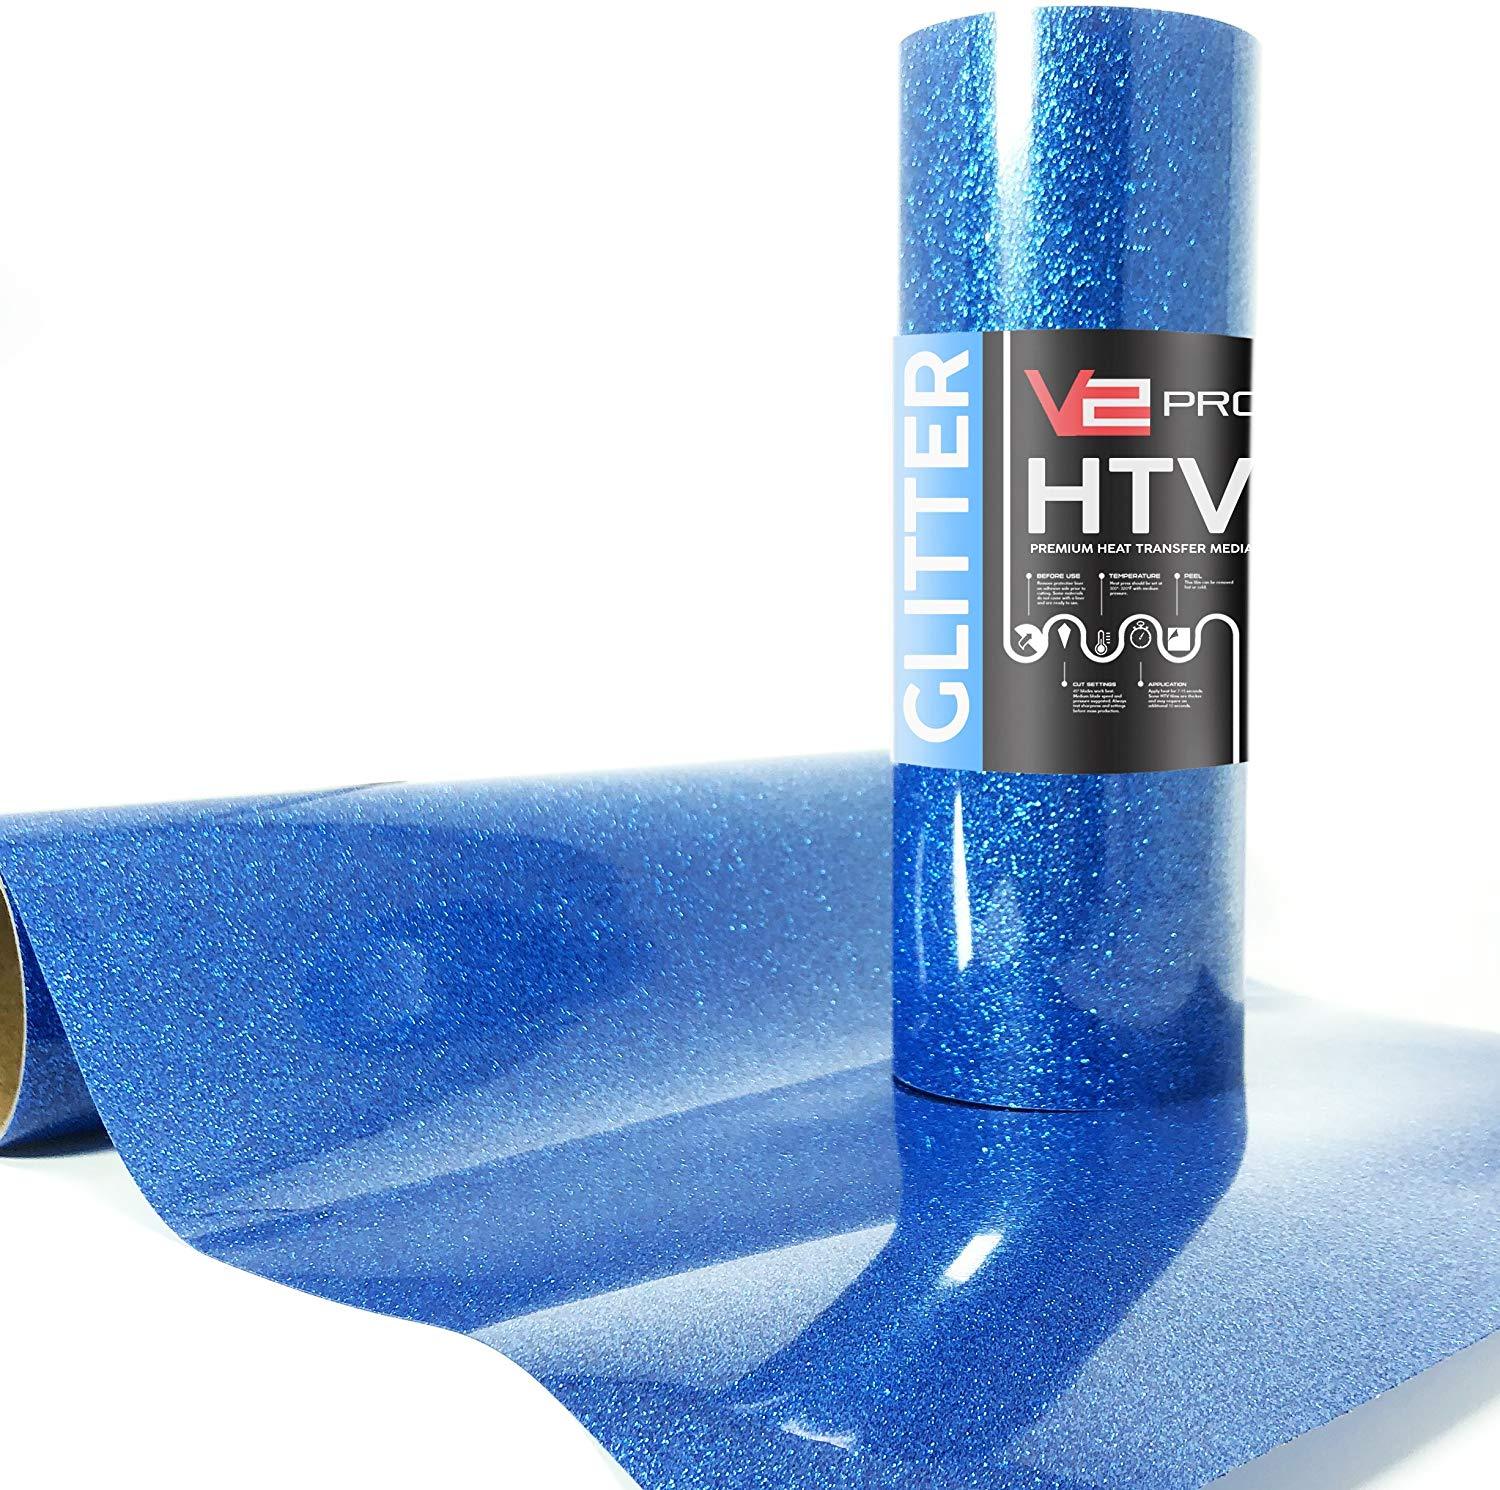 V2 Pro Hyper Blue Glitter Heat Transfer Vinyl Film thumbnail